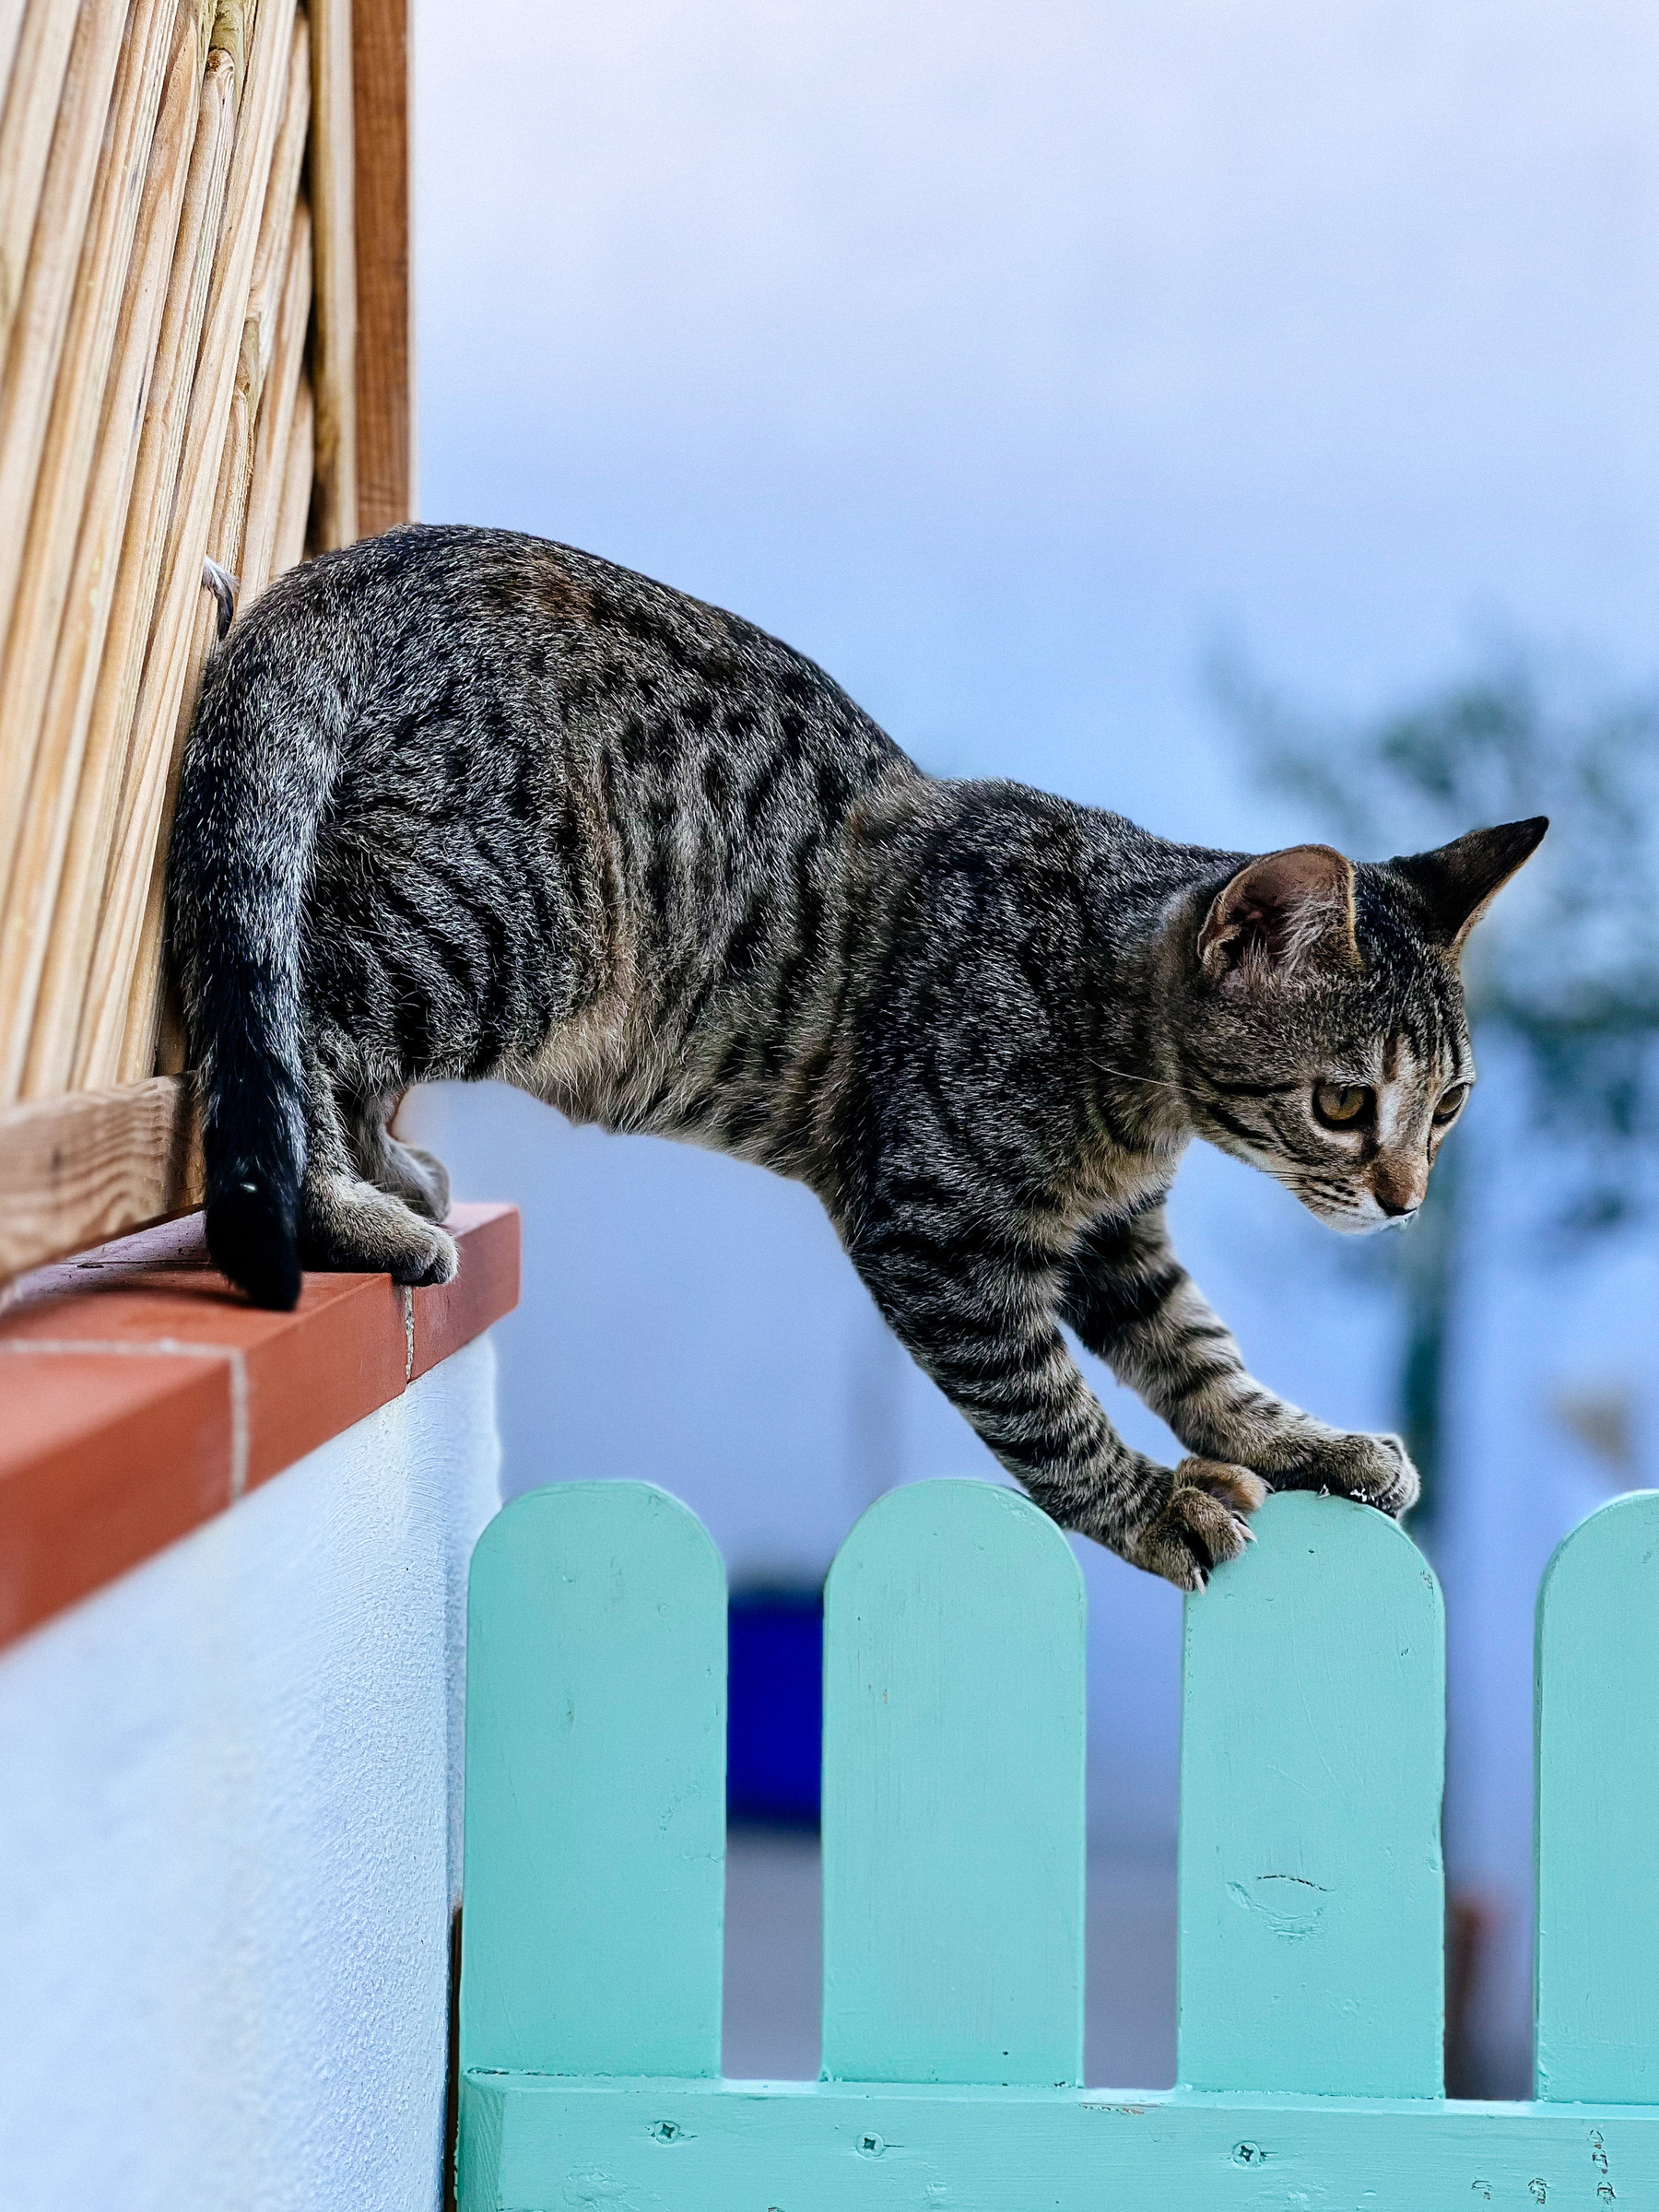 a kitten balances on a fence